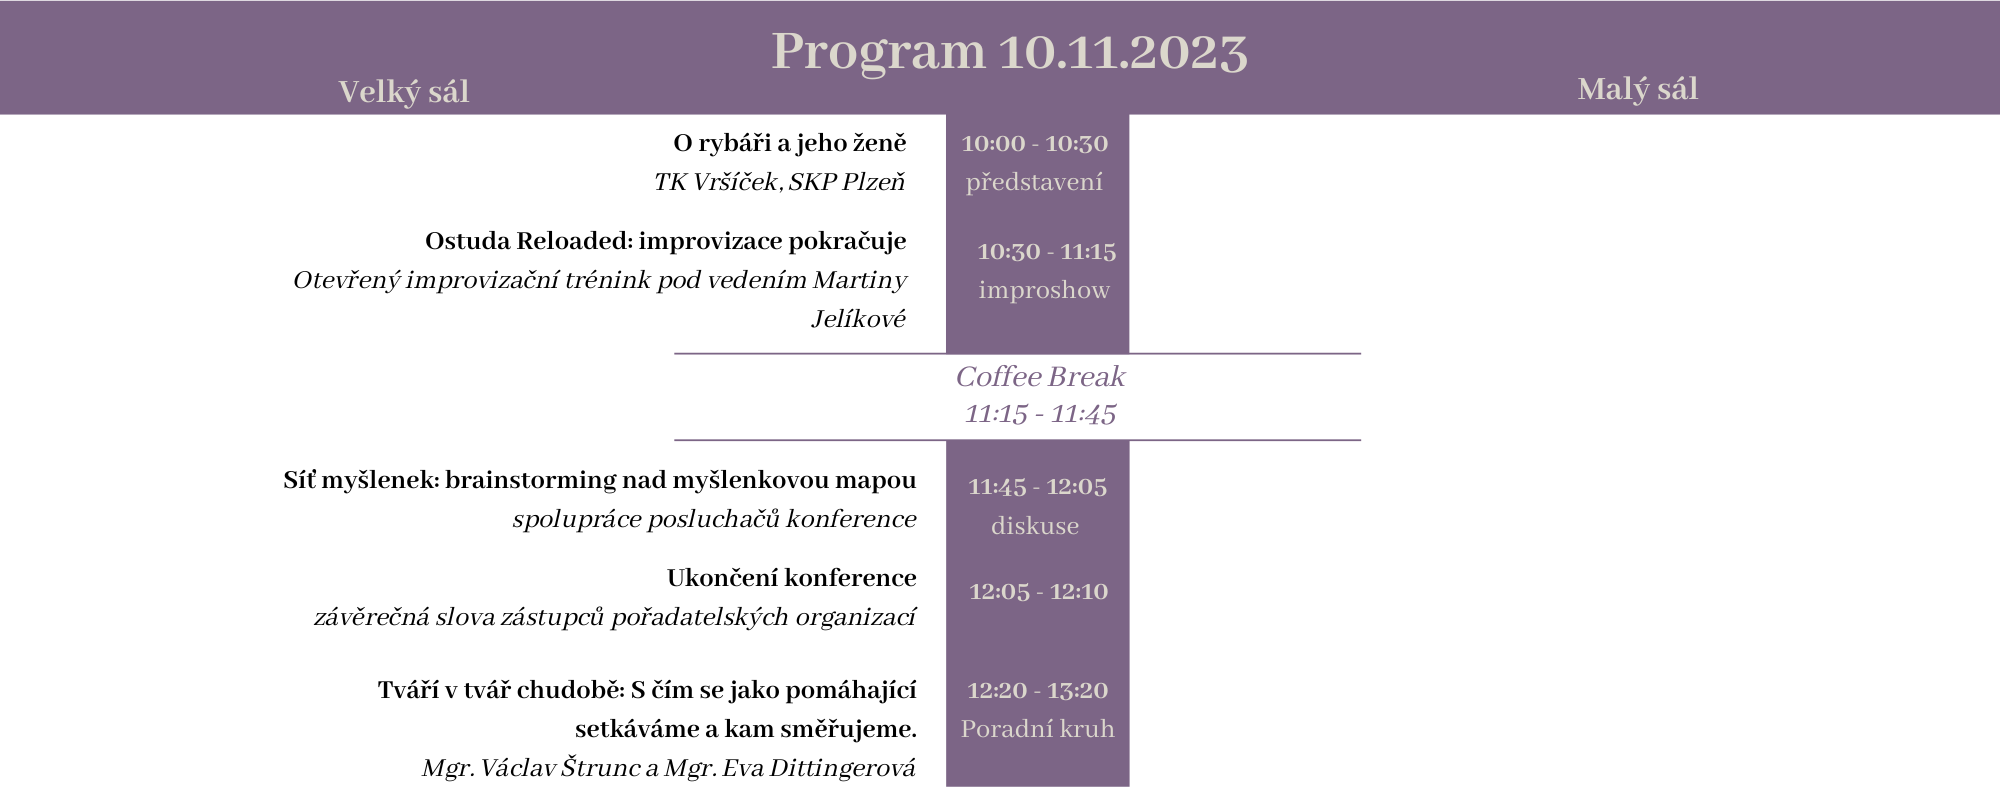 Program 10.11. průhledný na web